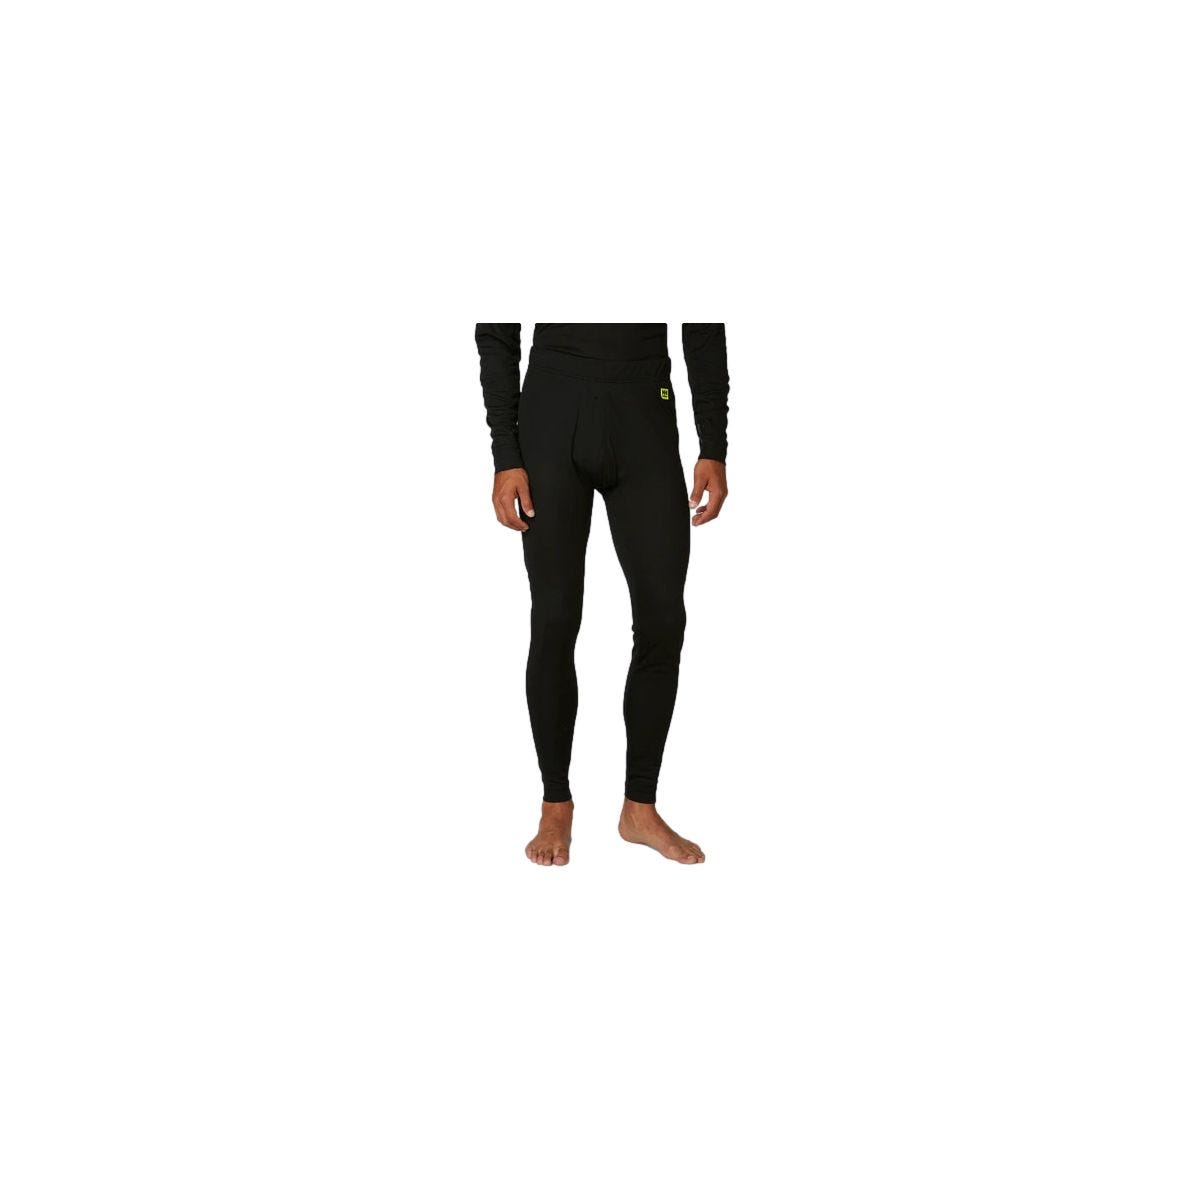 Pantalon sous-vêtement technique Lifa Noir - Helly Hansen - Taille M 2